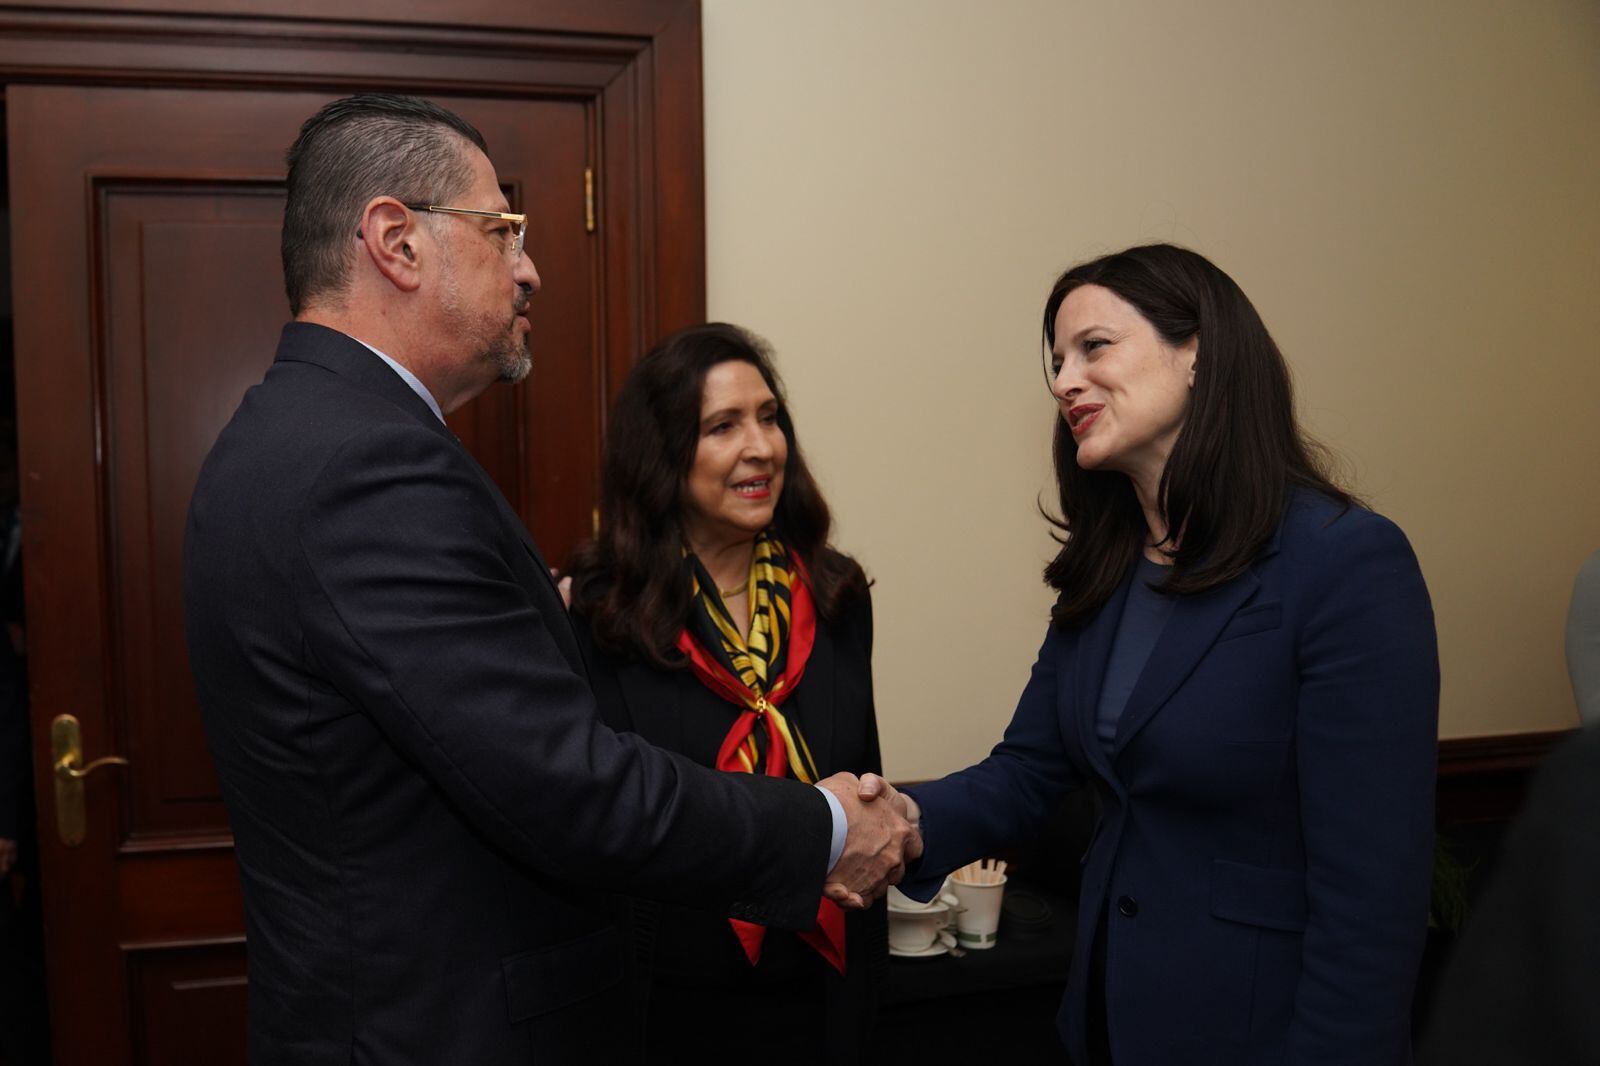 El presidente de la República, Rodrigo Chaves, saluda a la asesora presidencial estadounidense, Anne Neuberger (der.), en presencia de la embajadora norteamericana en Costa Rica, Cynthia A. Telles.